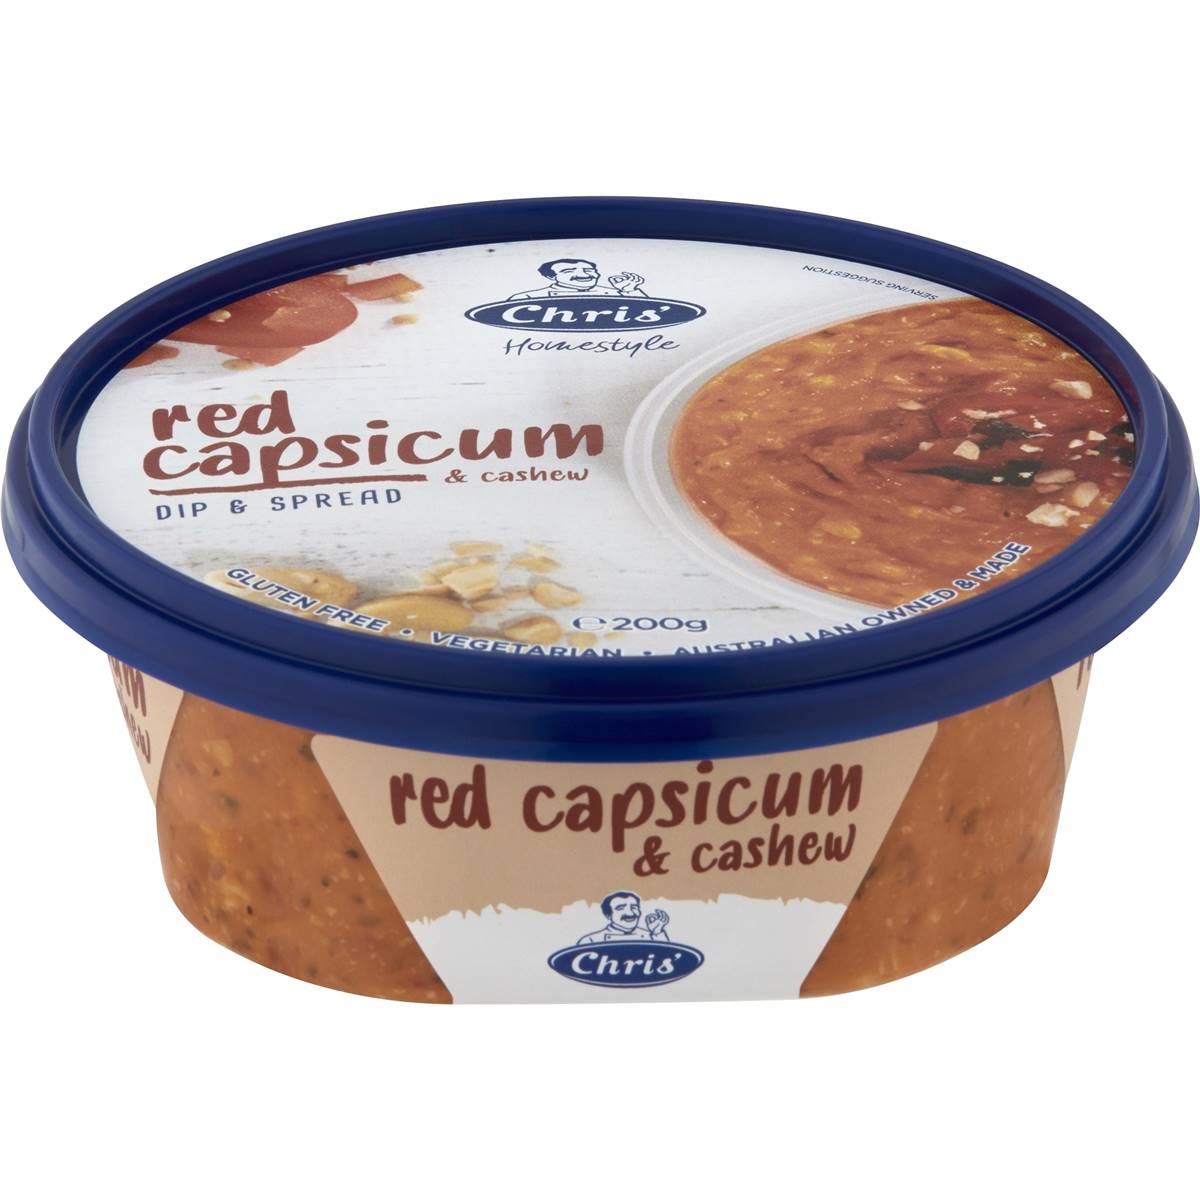 Calories in Chris' Red Capsicum & Cashew Dip & Spread